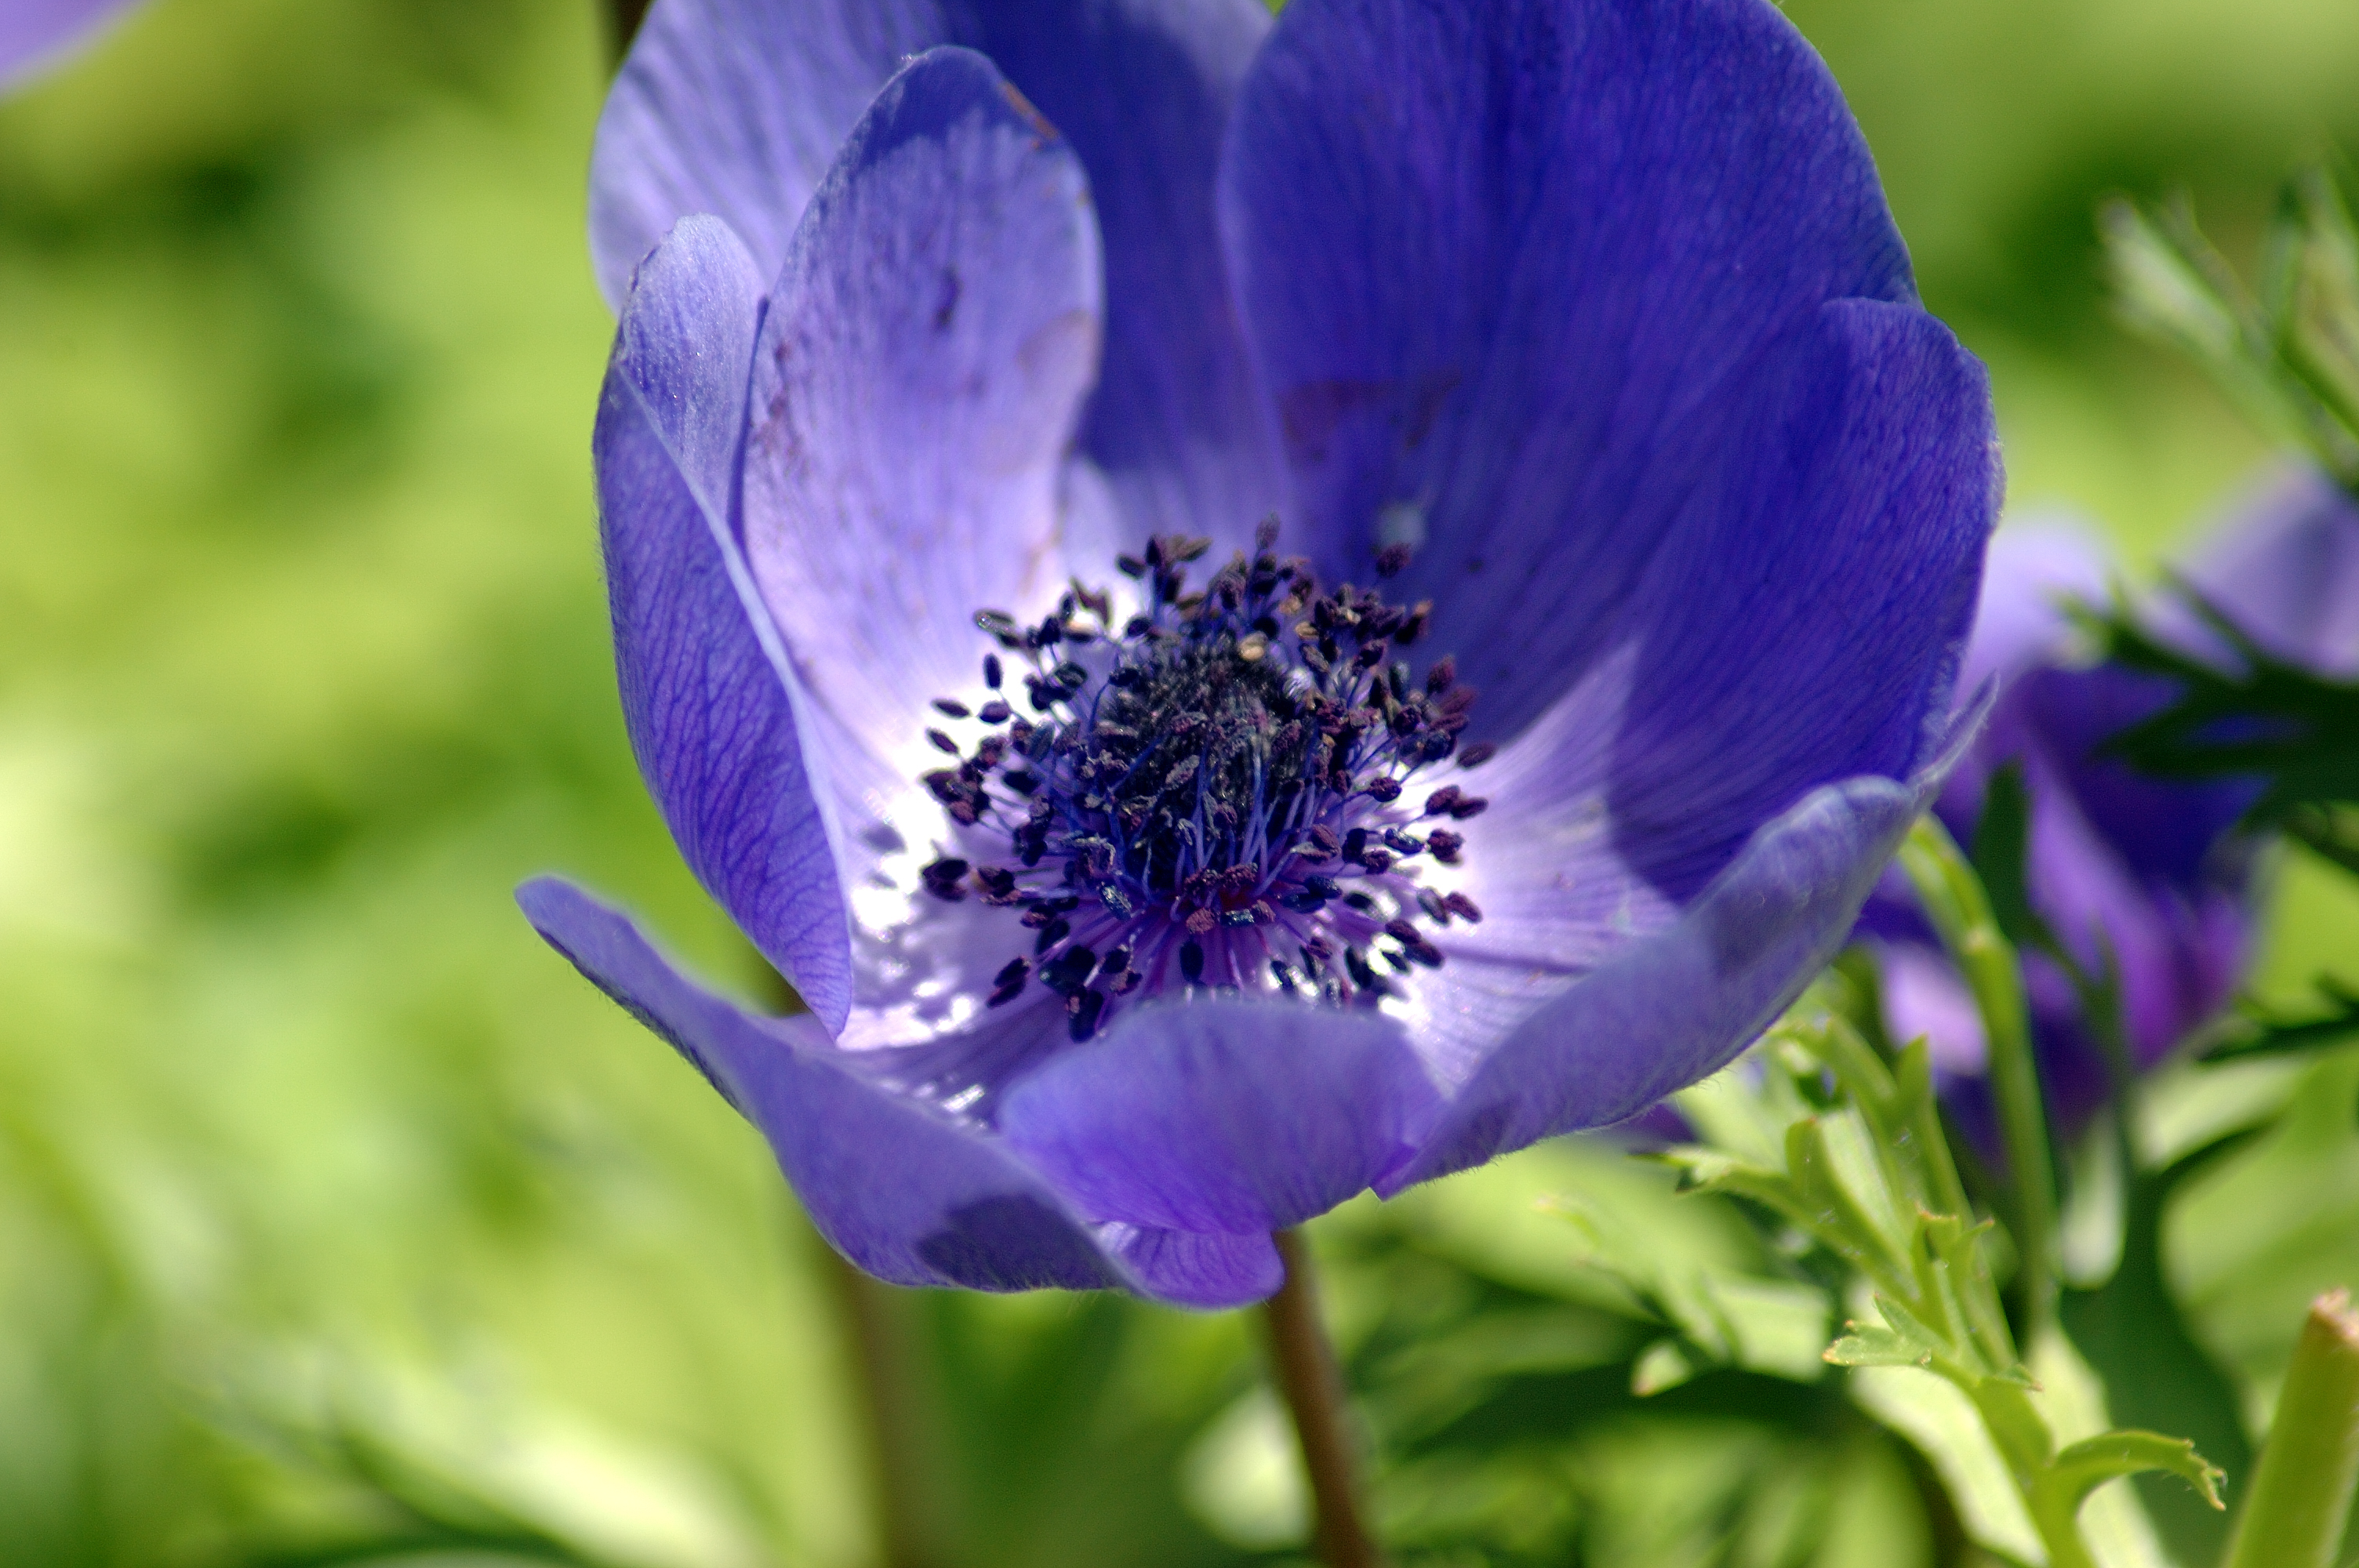 File:Purple Flower.jpg - Wikimedia Commons